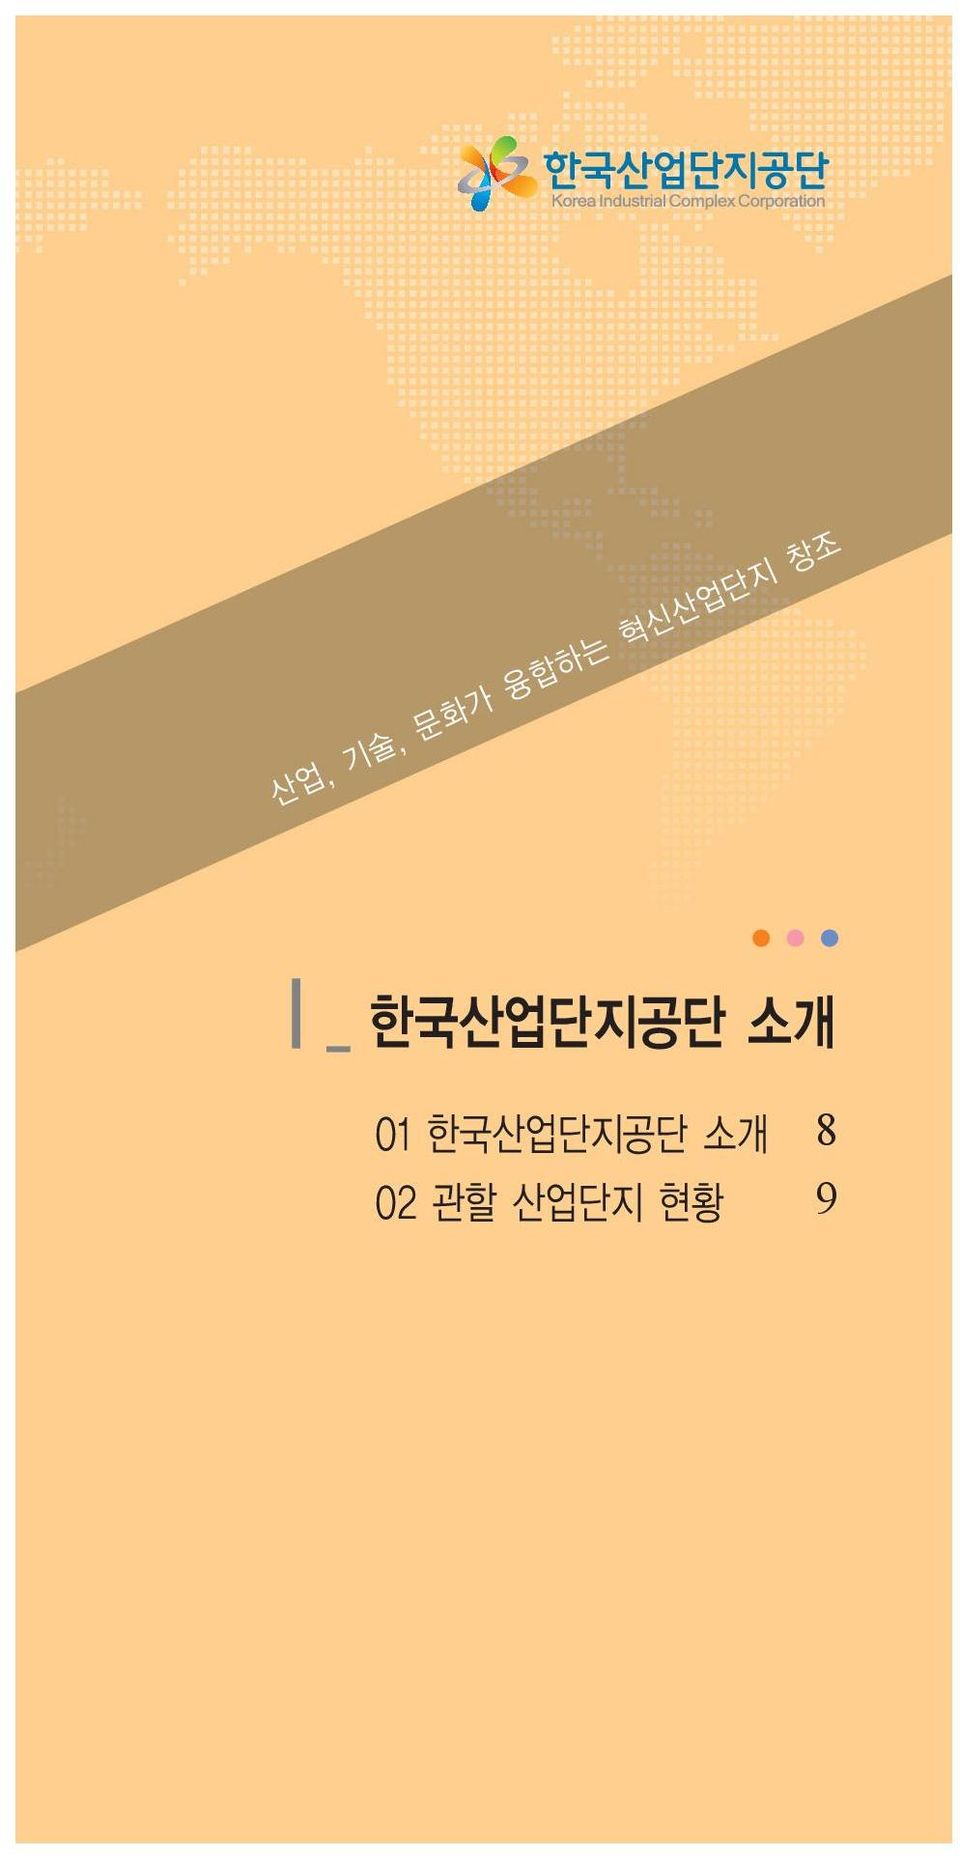 한국산업단지공단 소개 01